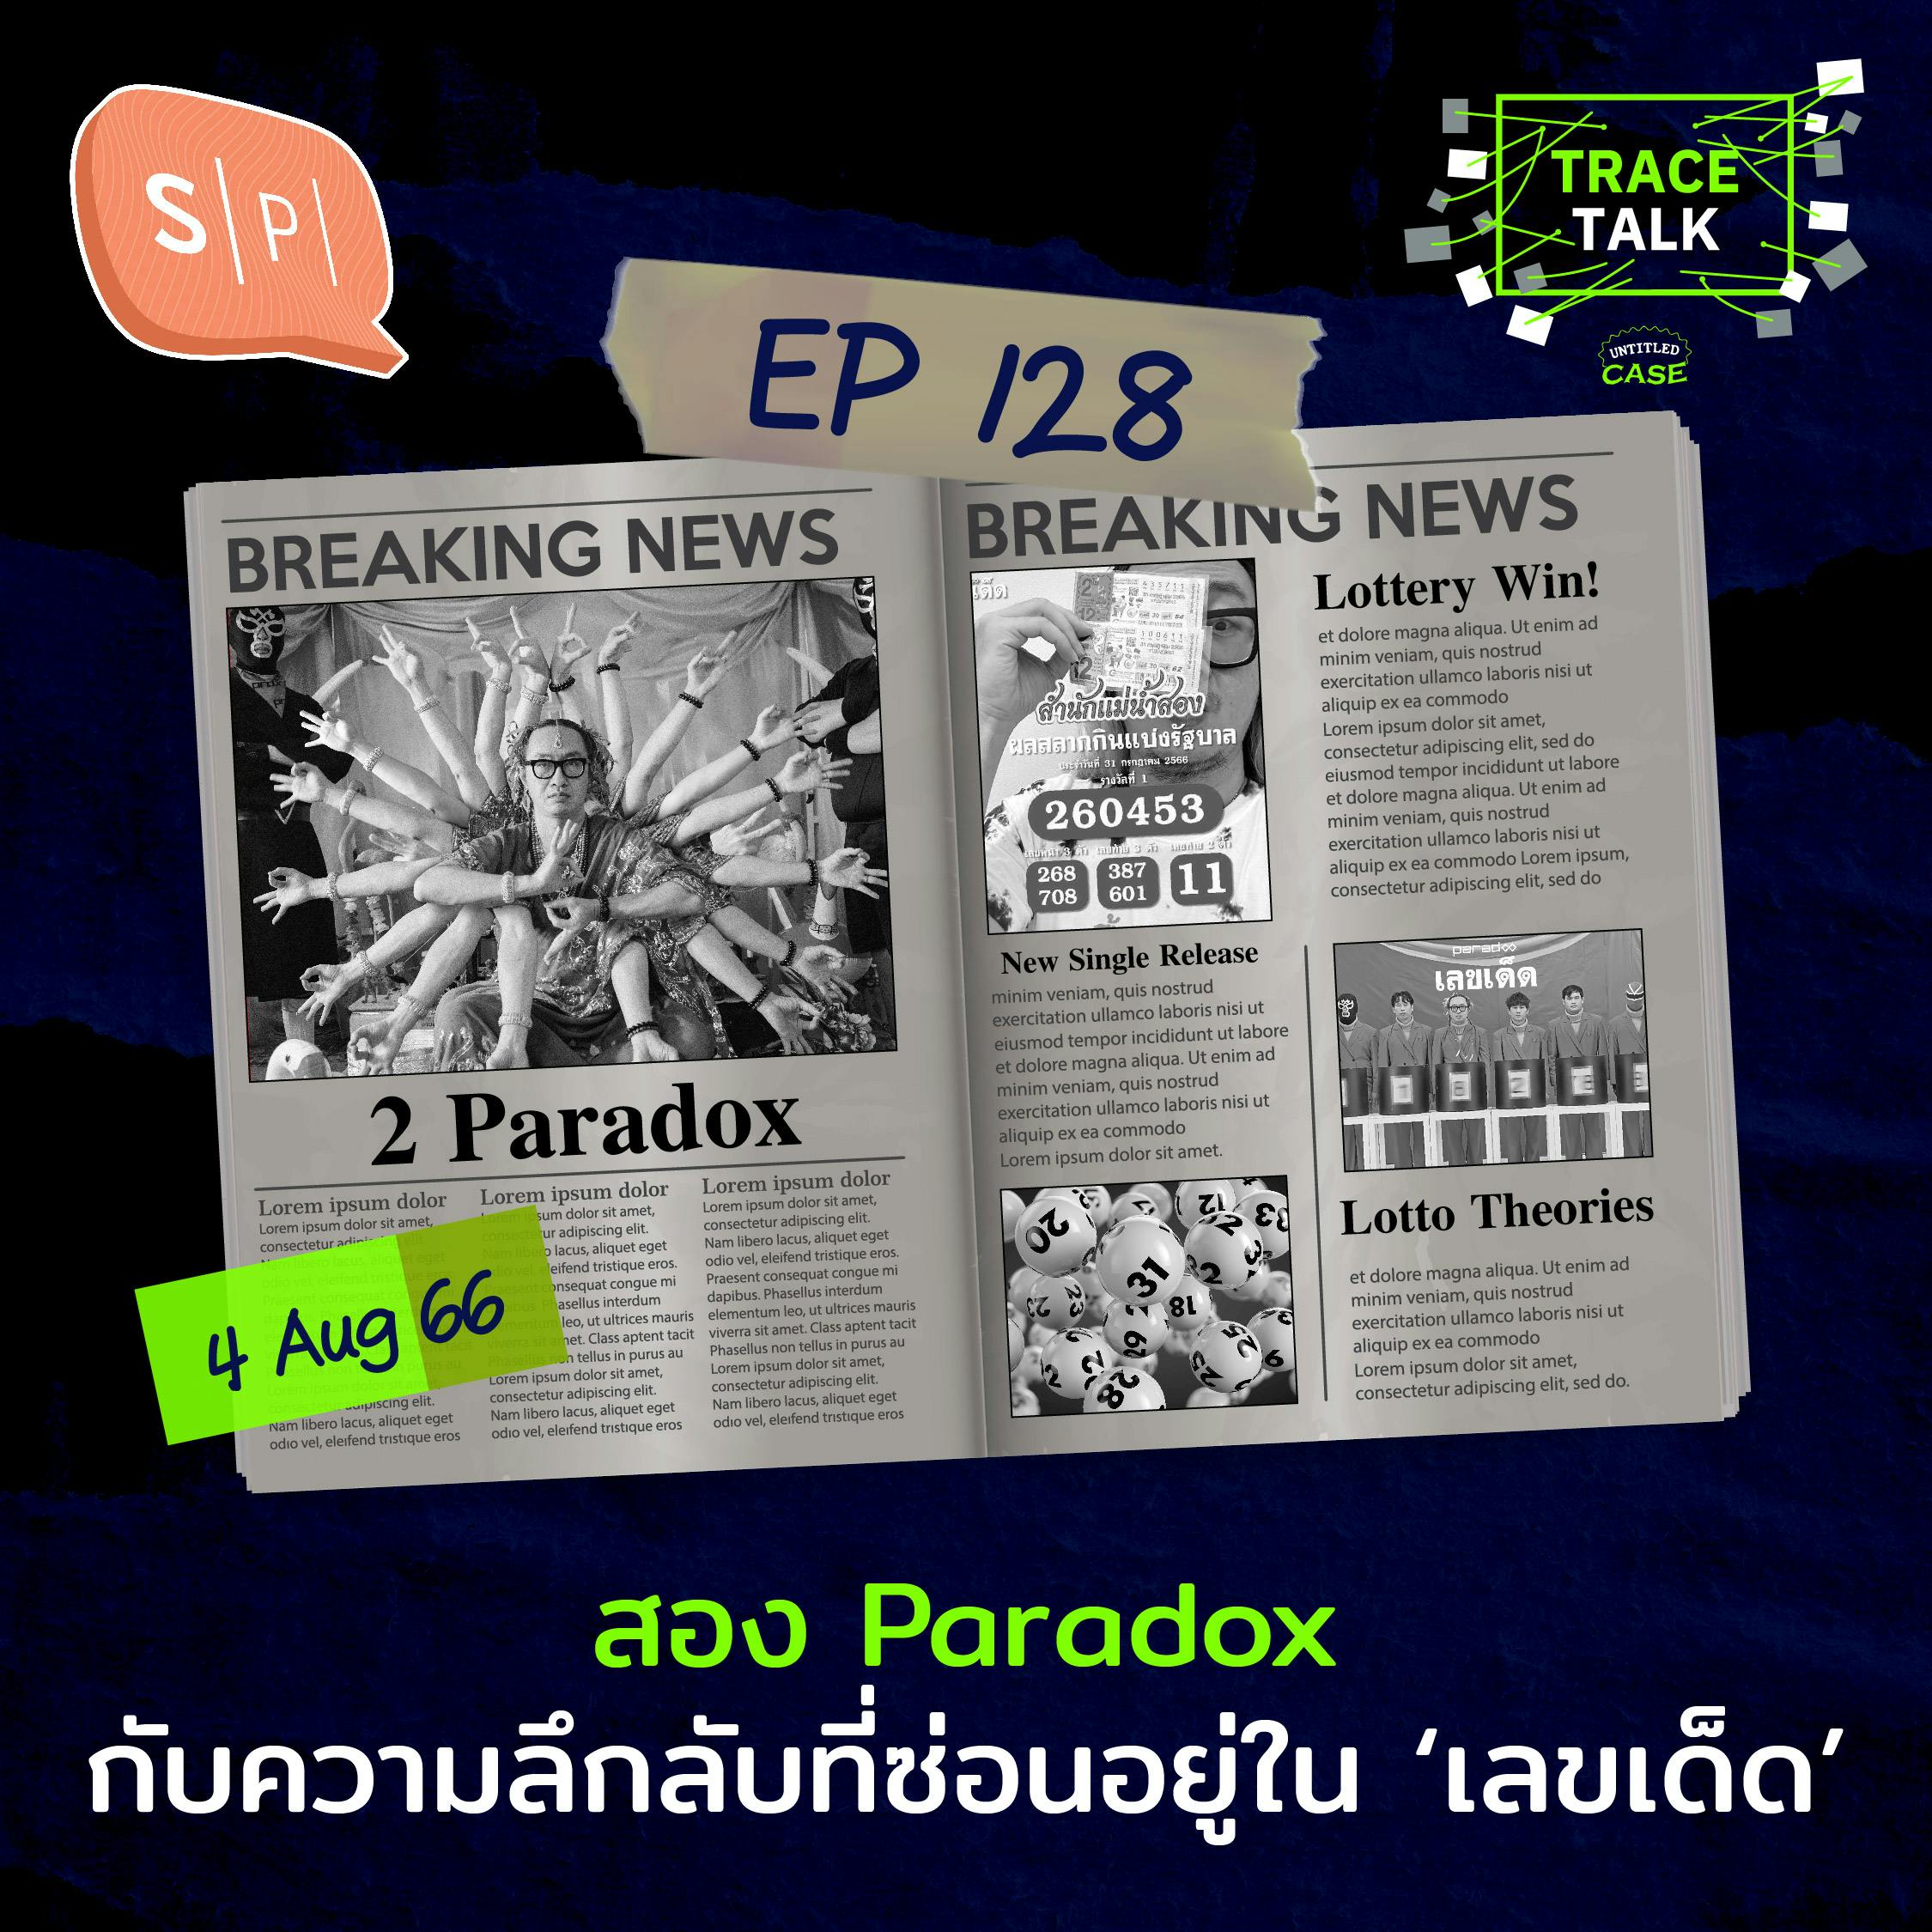 สอง Paradox กับความลึกลับที่ซ่อนอยู่ใน ‘เลขเด็ด’ | Trace Talk EP128